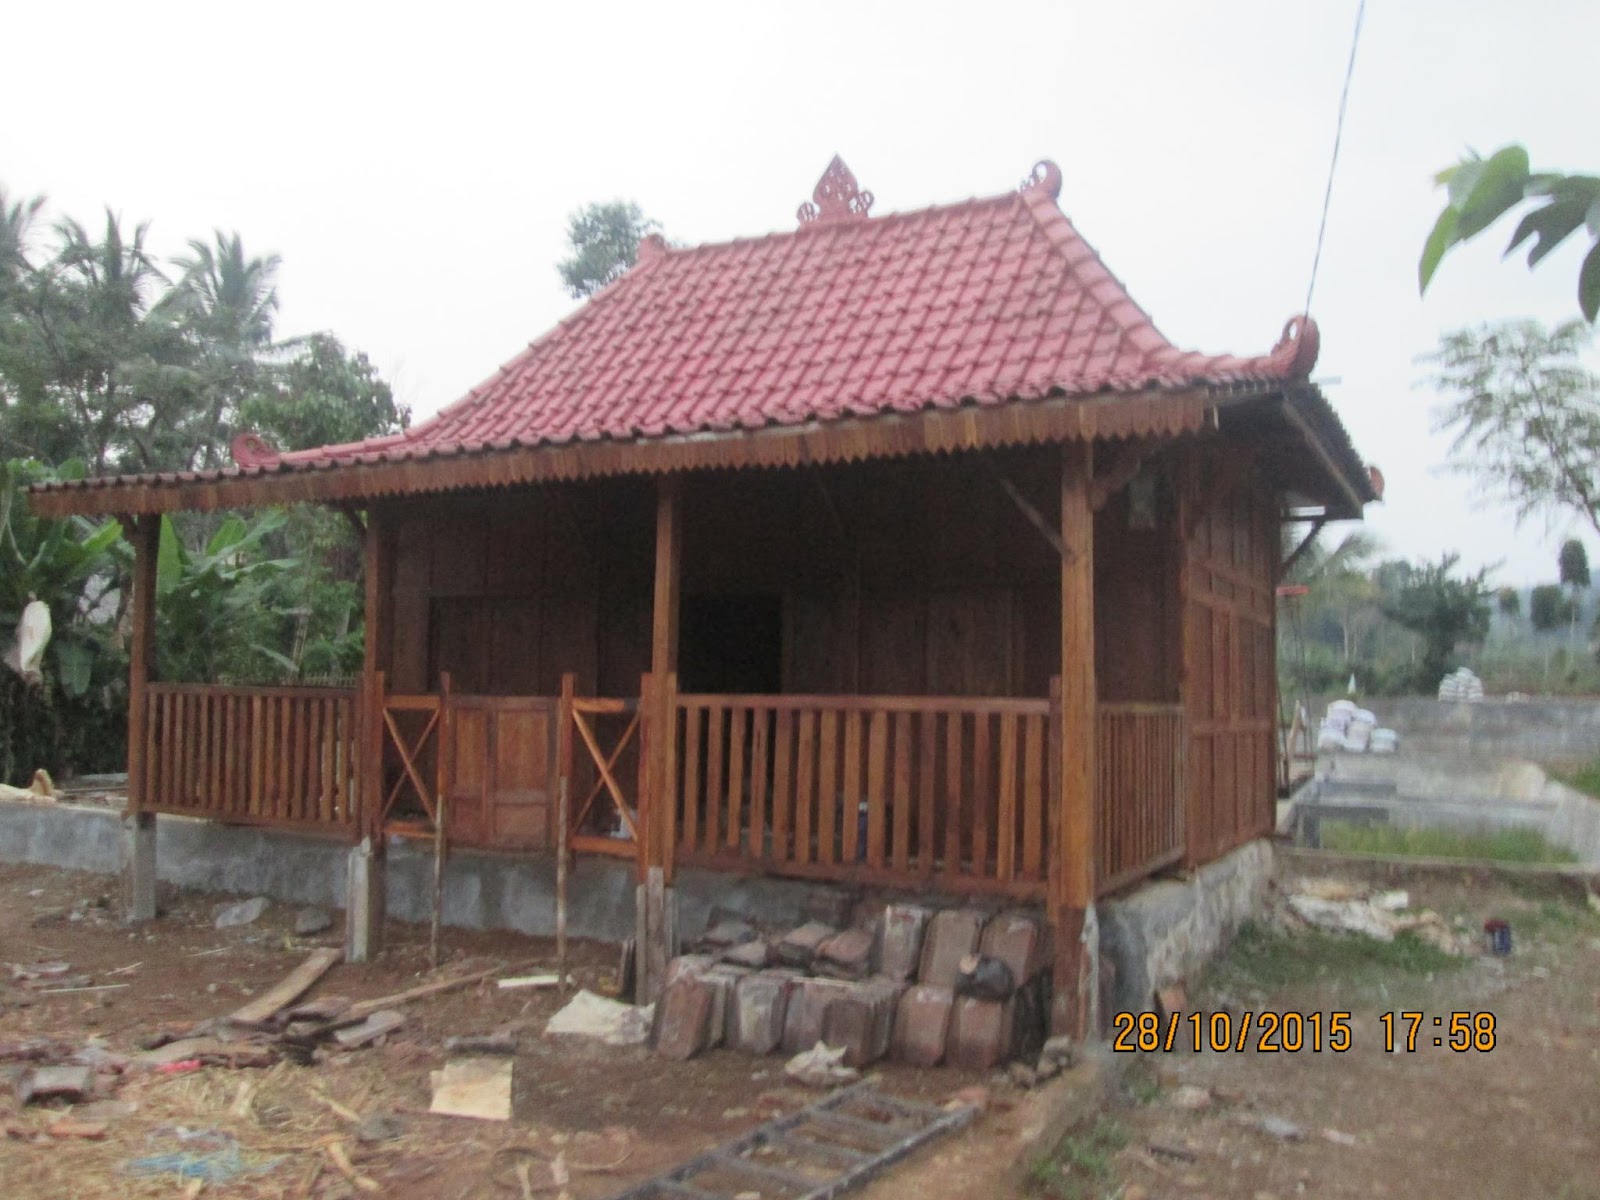 37 Terbaru Pagar Rumah Jawa Sederhana